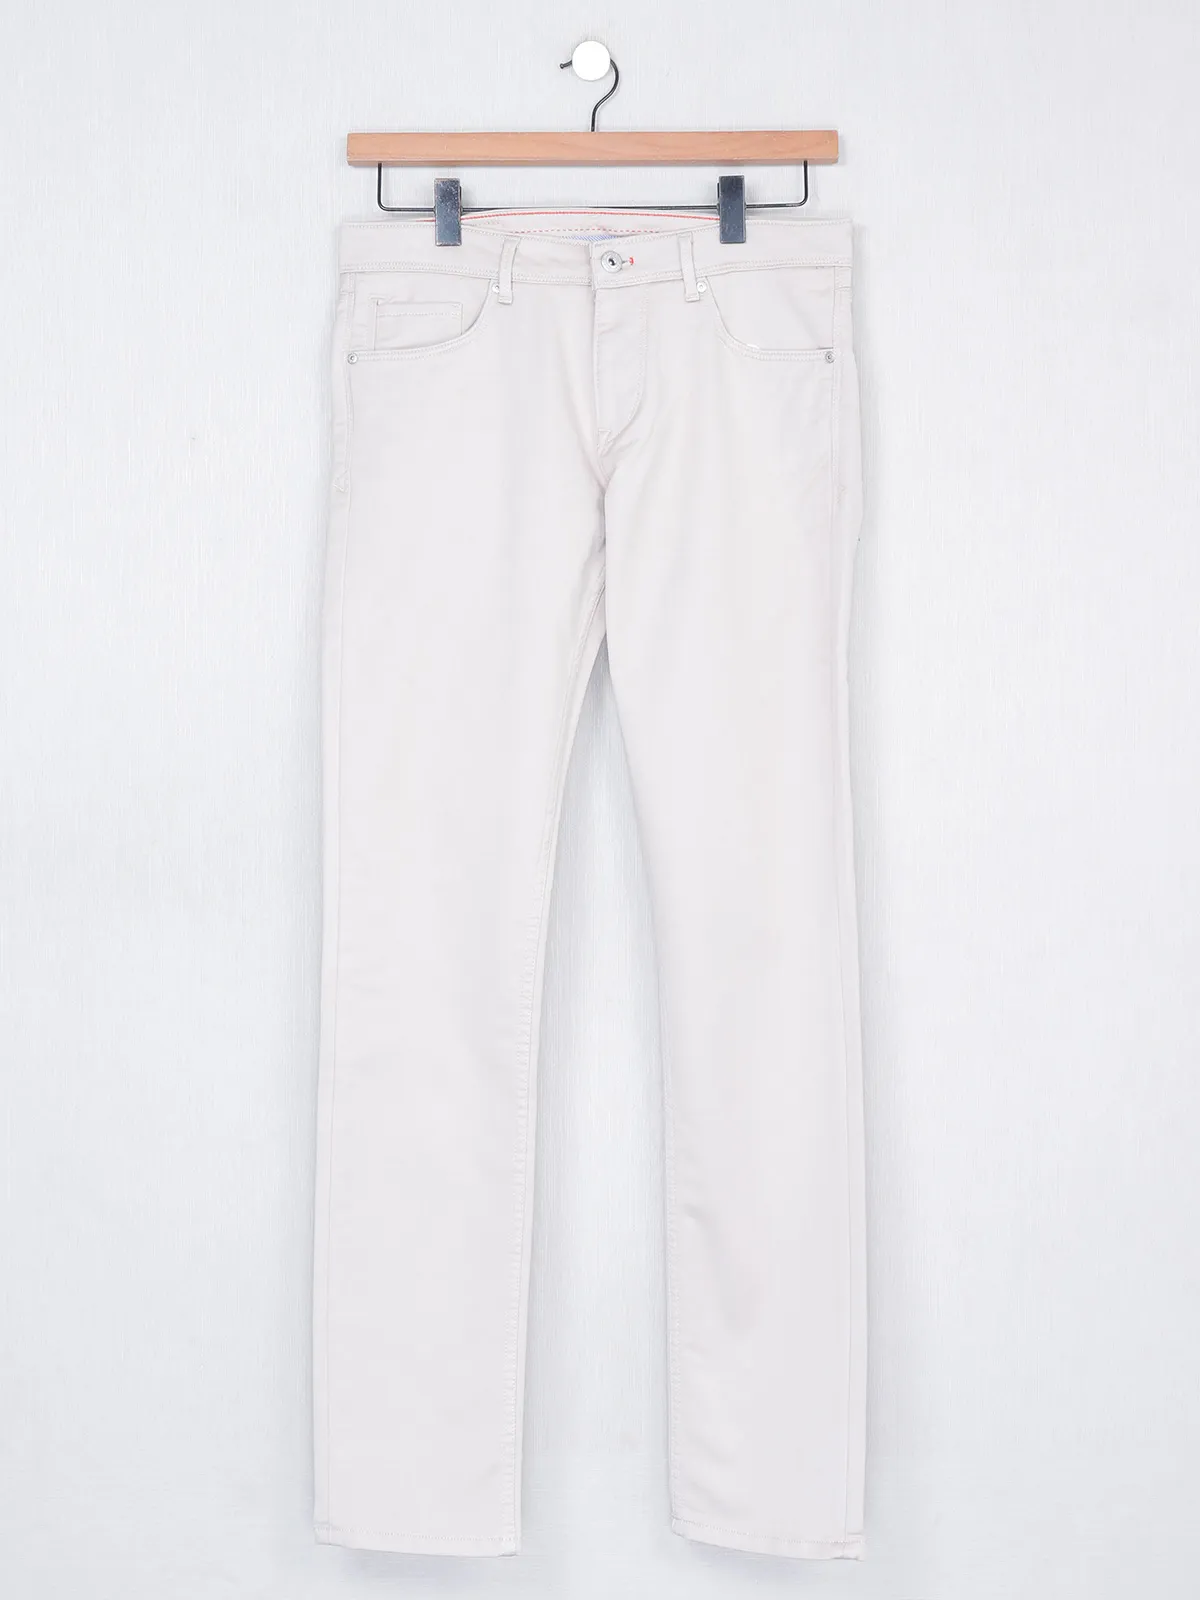 Killer cream color solid cotton trouser